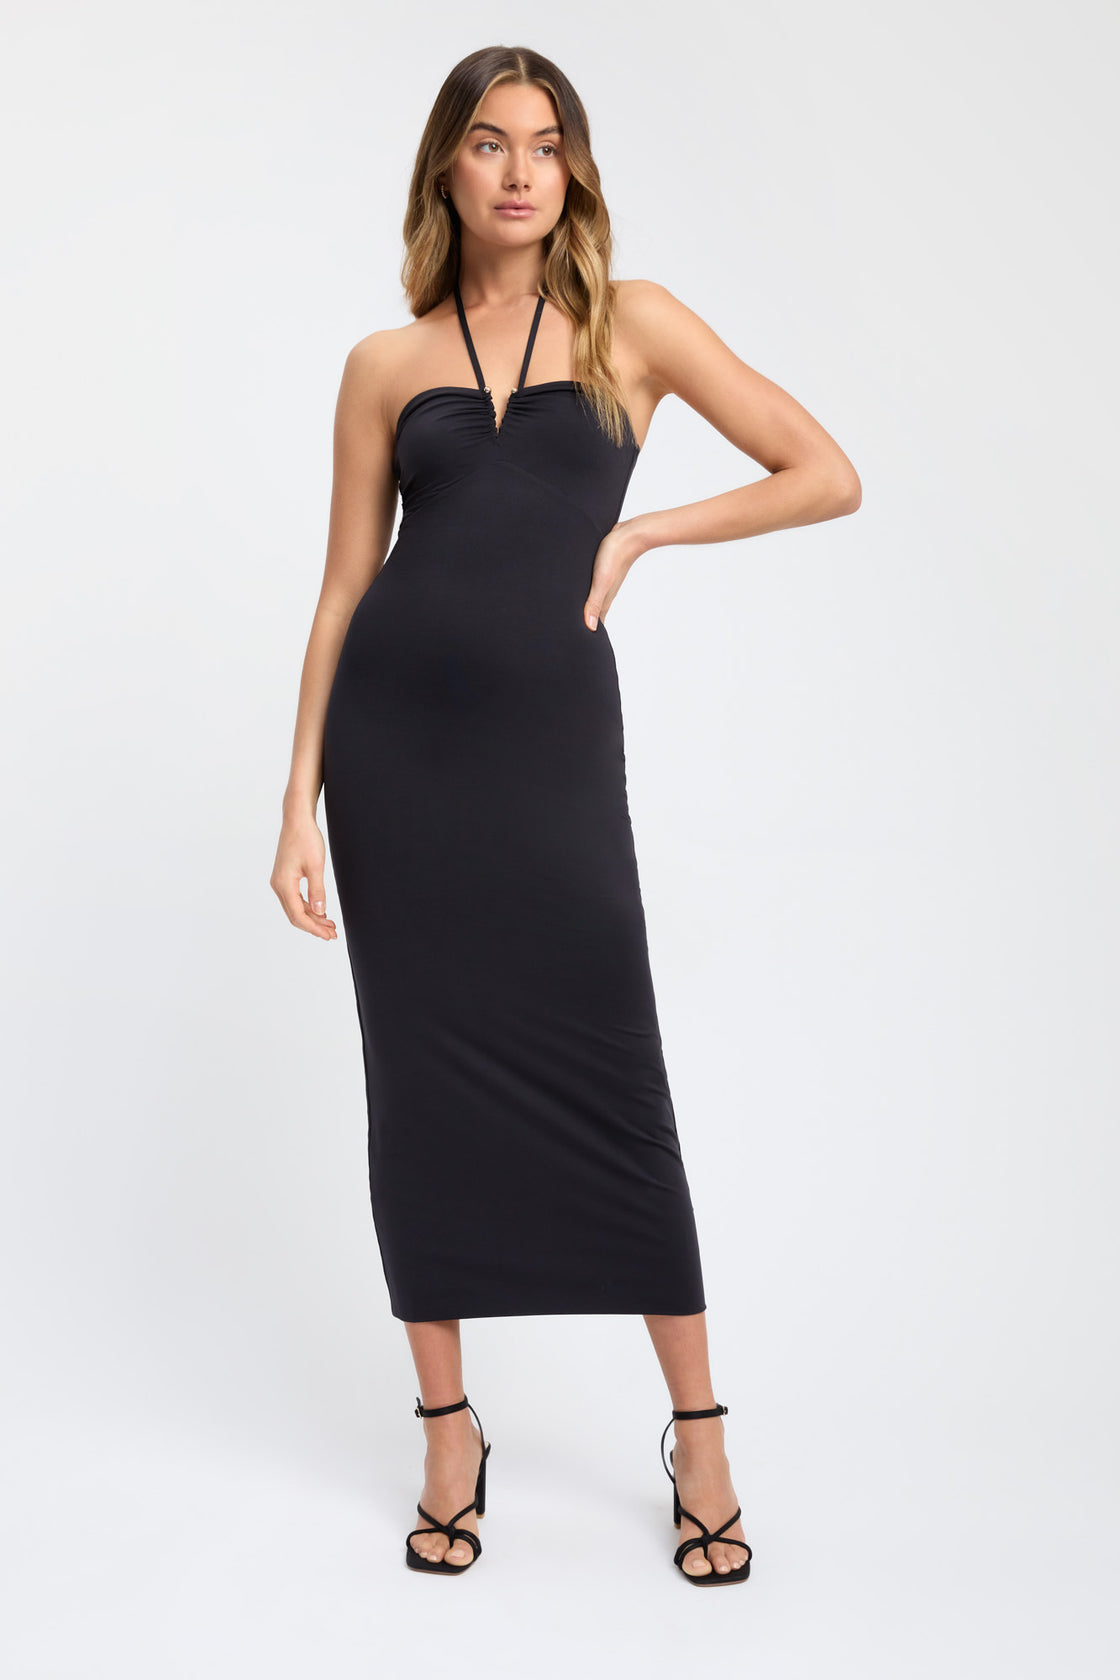 Buy Sunday Halter Dress Black Online | Australia